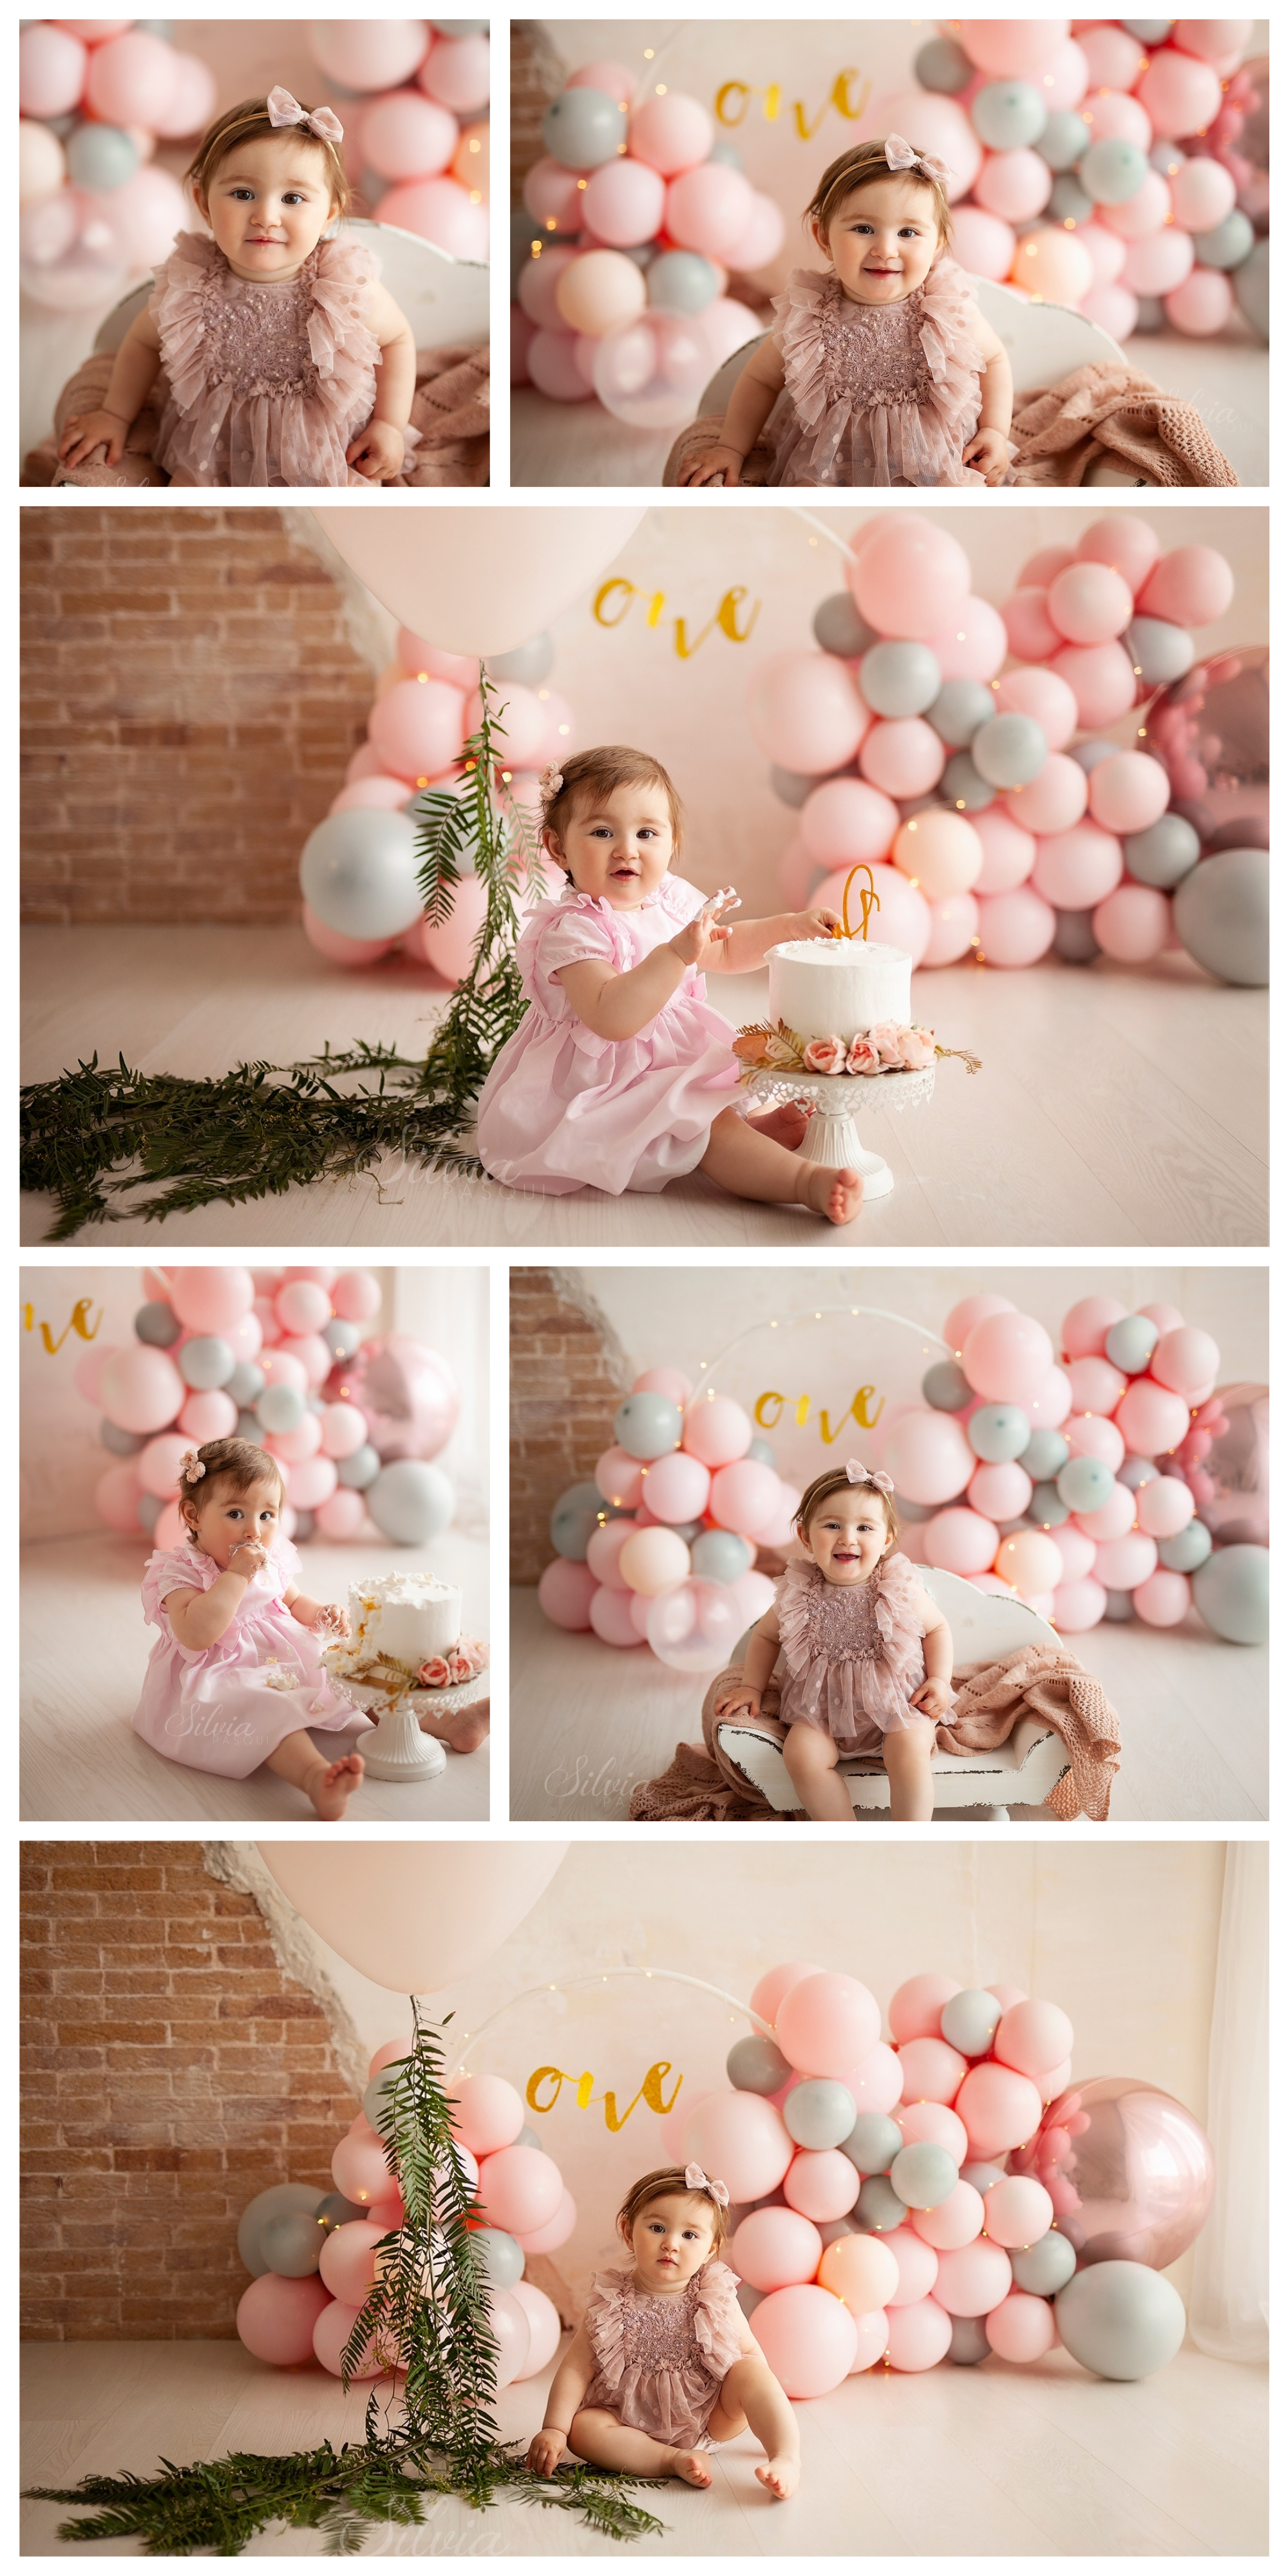 Fotografie 1 anno bambini con torta e palloncini, Silvia Pasqui